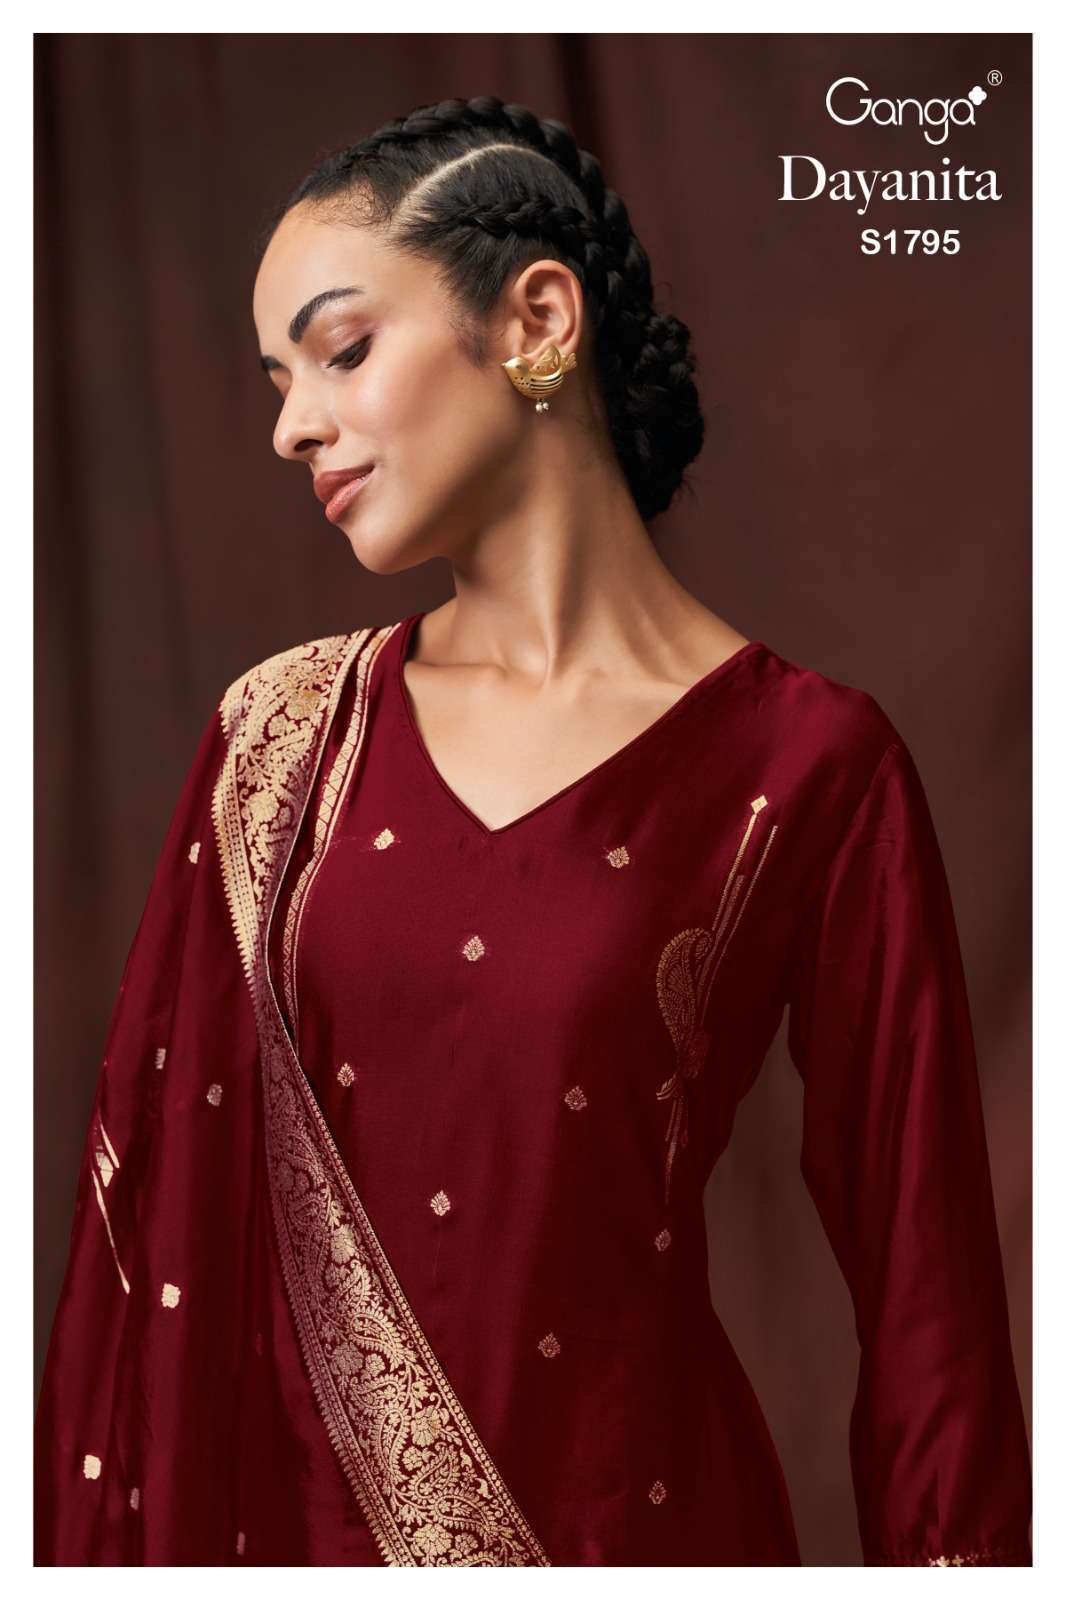 Ganga Dayanita 1795 Premium Designer Silk Dress Partywear Collection